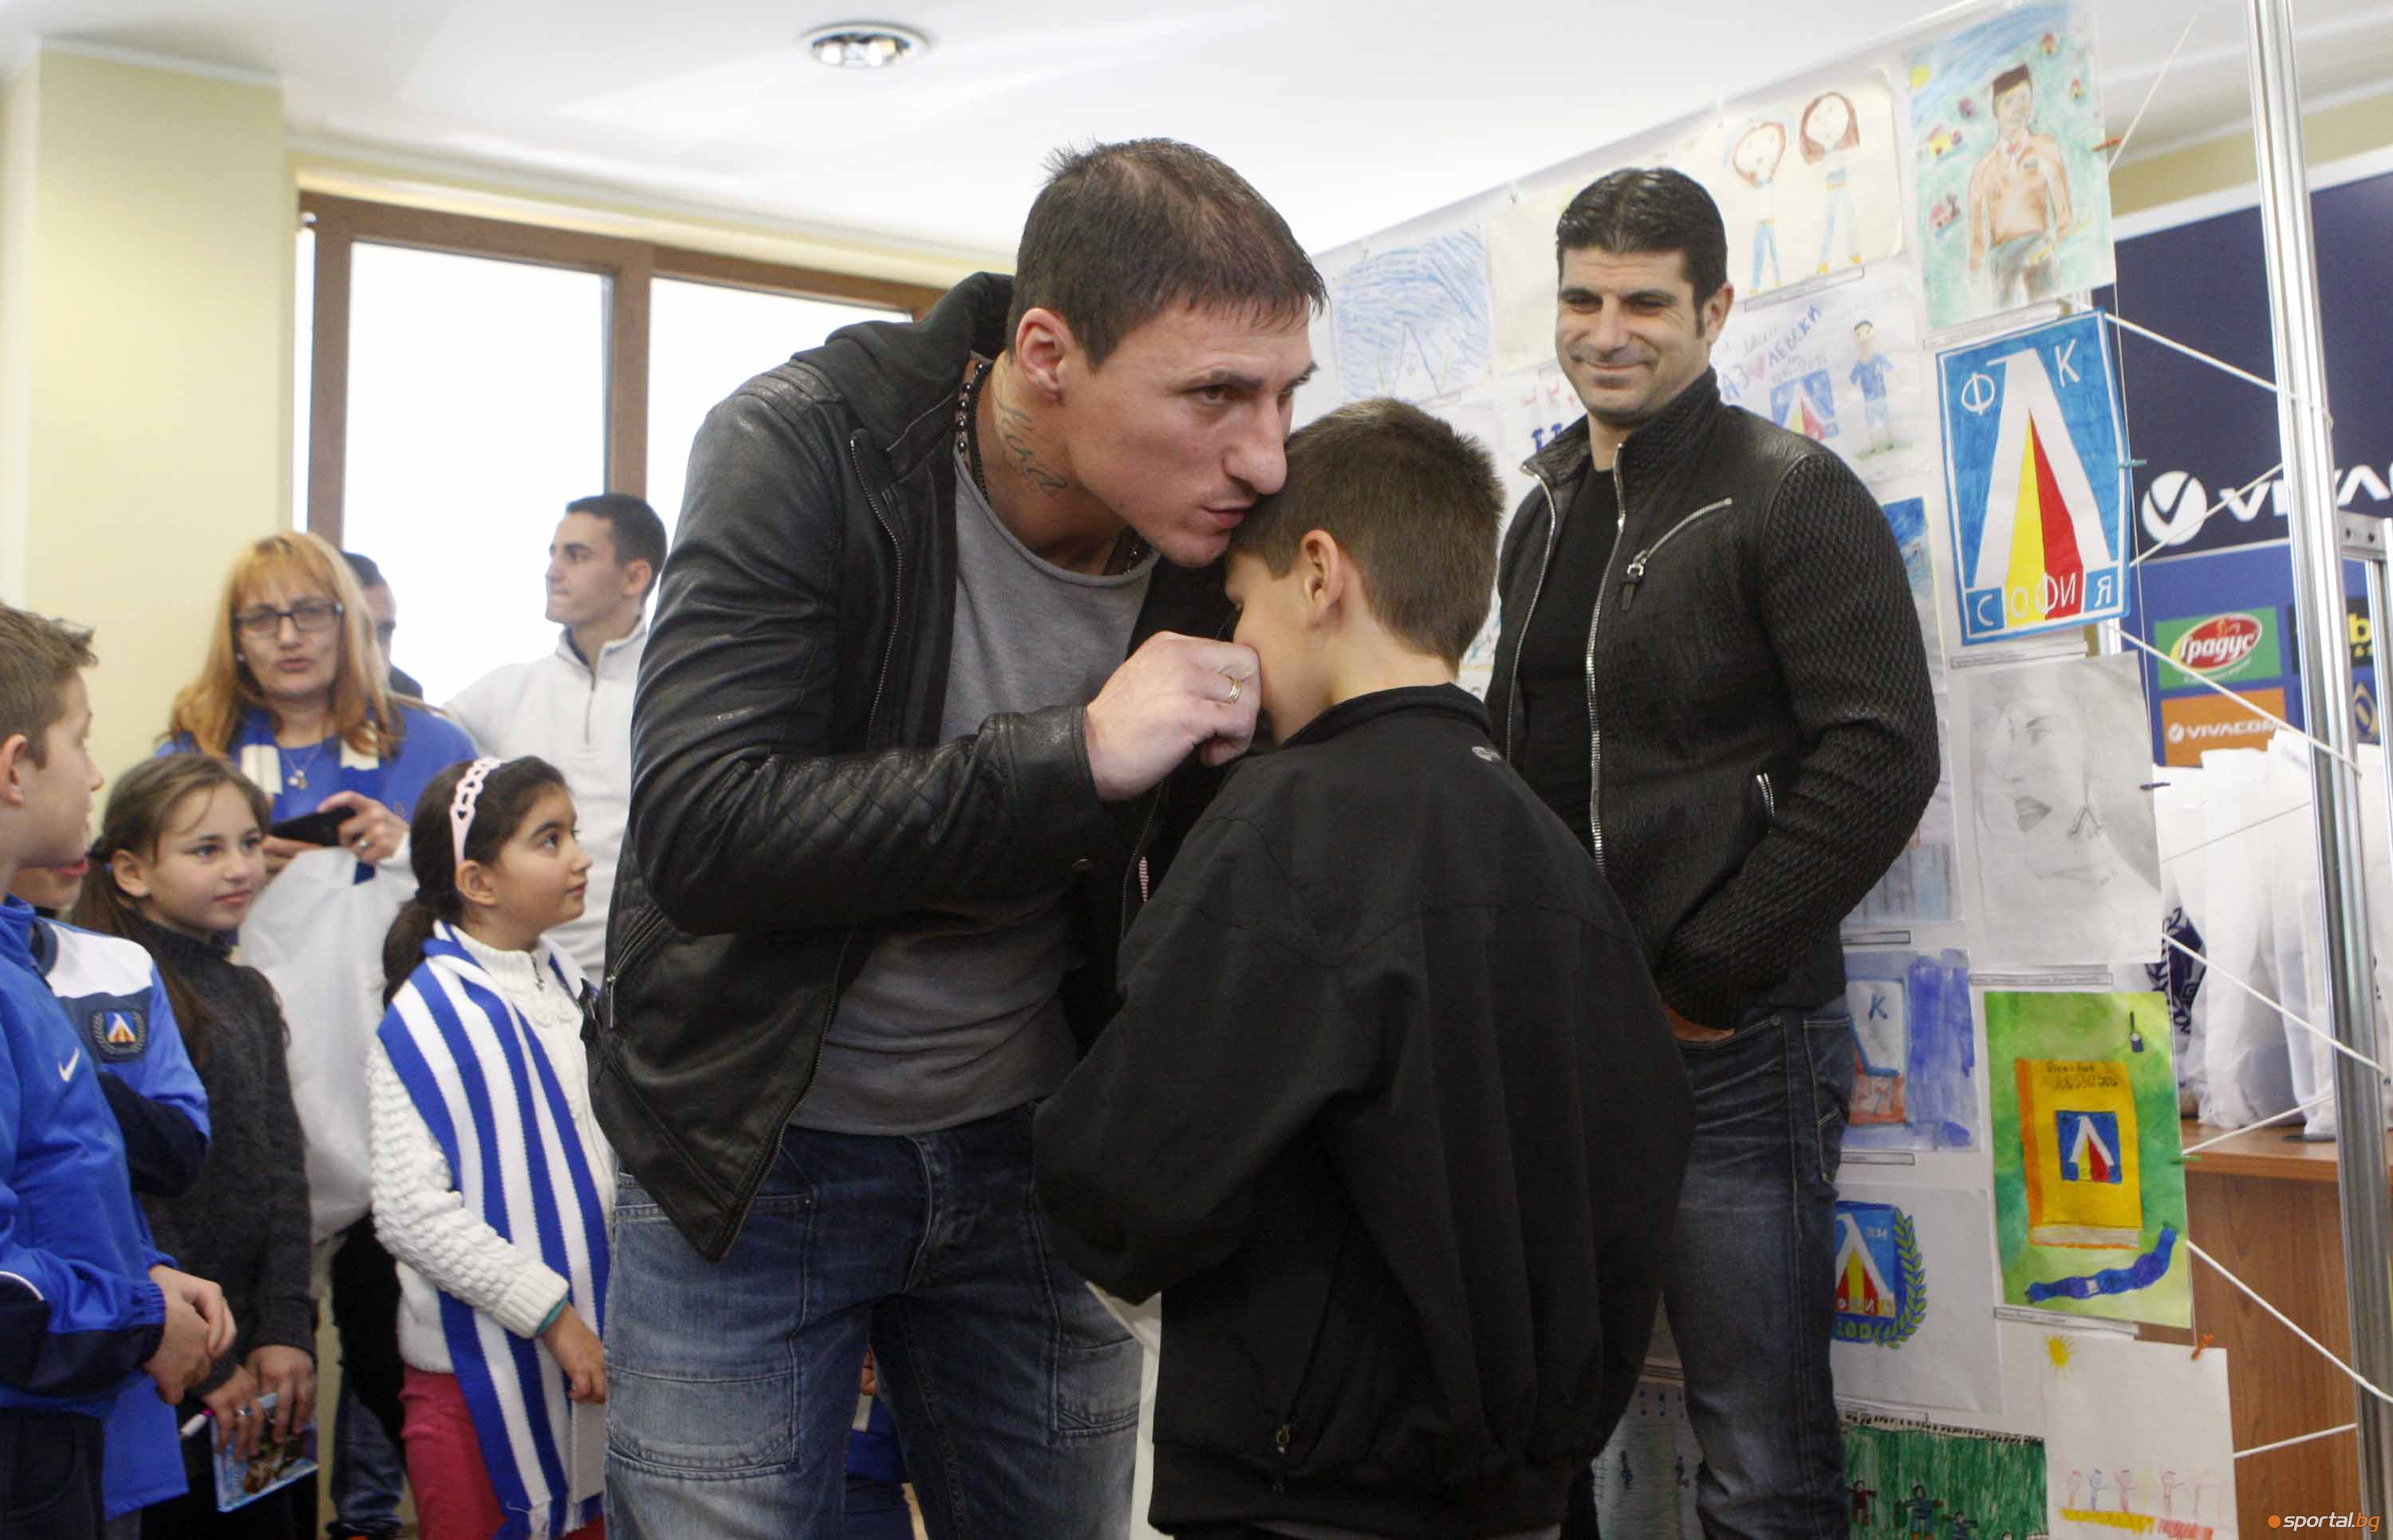 Футболисти наградиха деца от конкурса "Какво е Левски за мен"